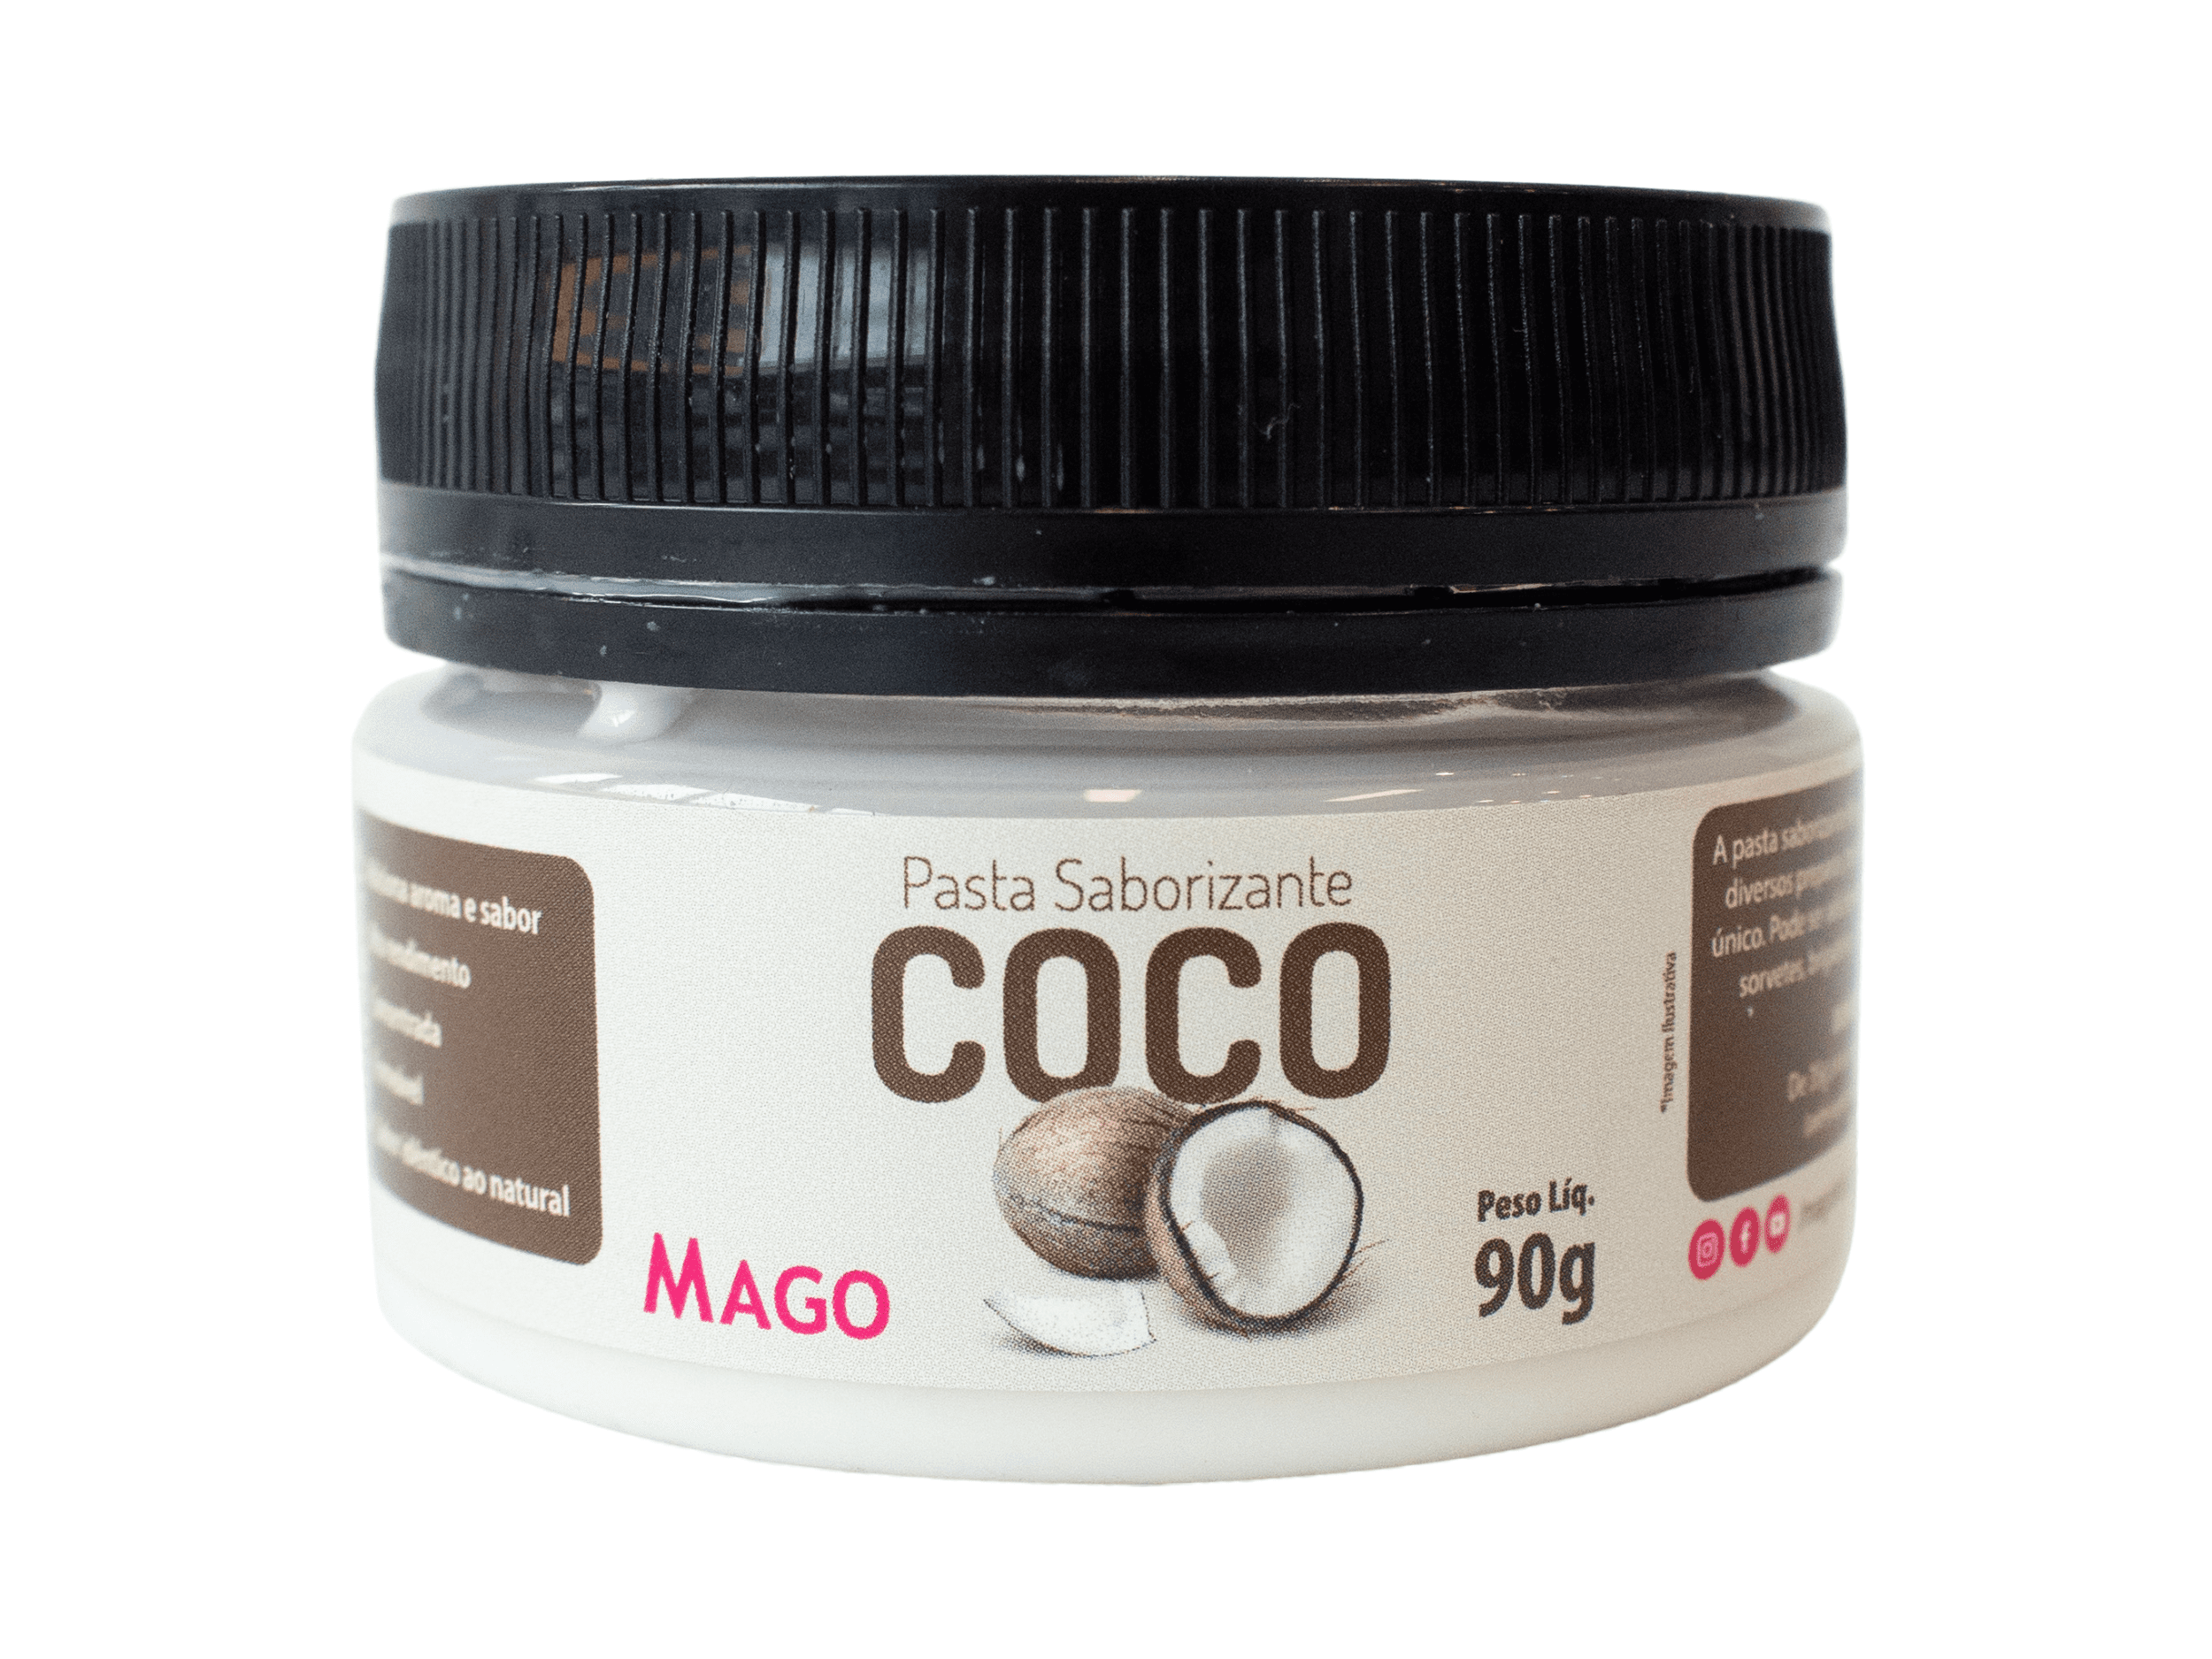 Pasta Saborizante Coco 90g - Mago